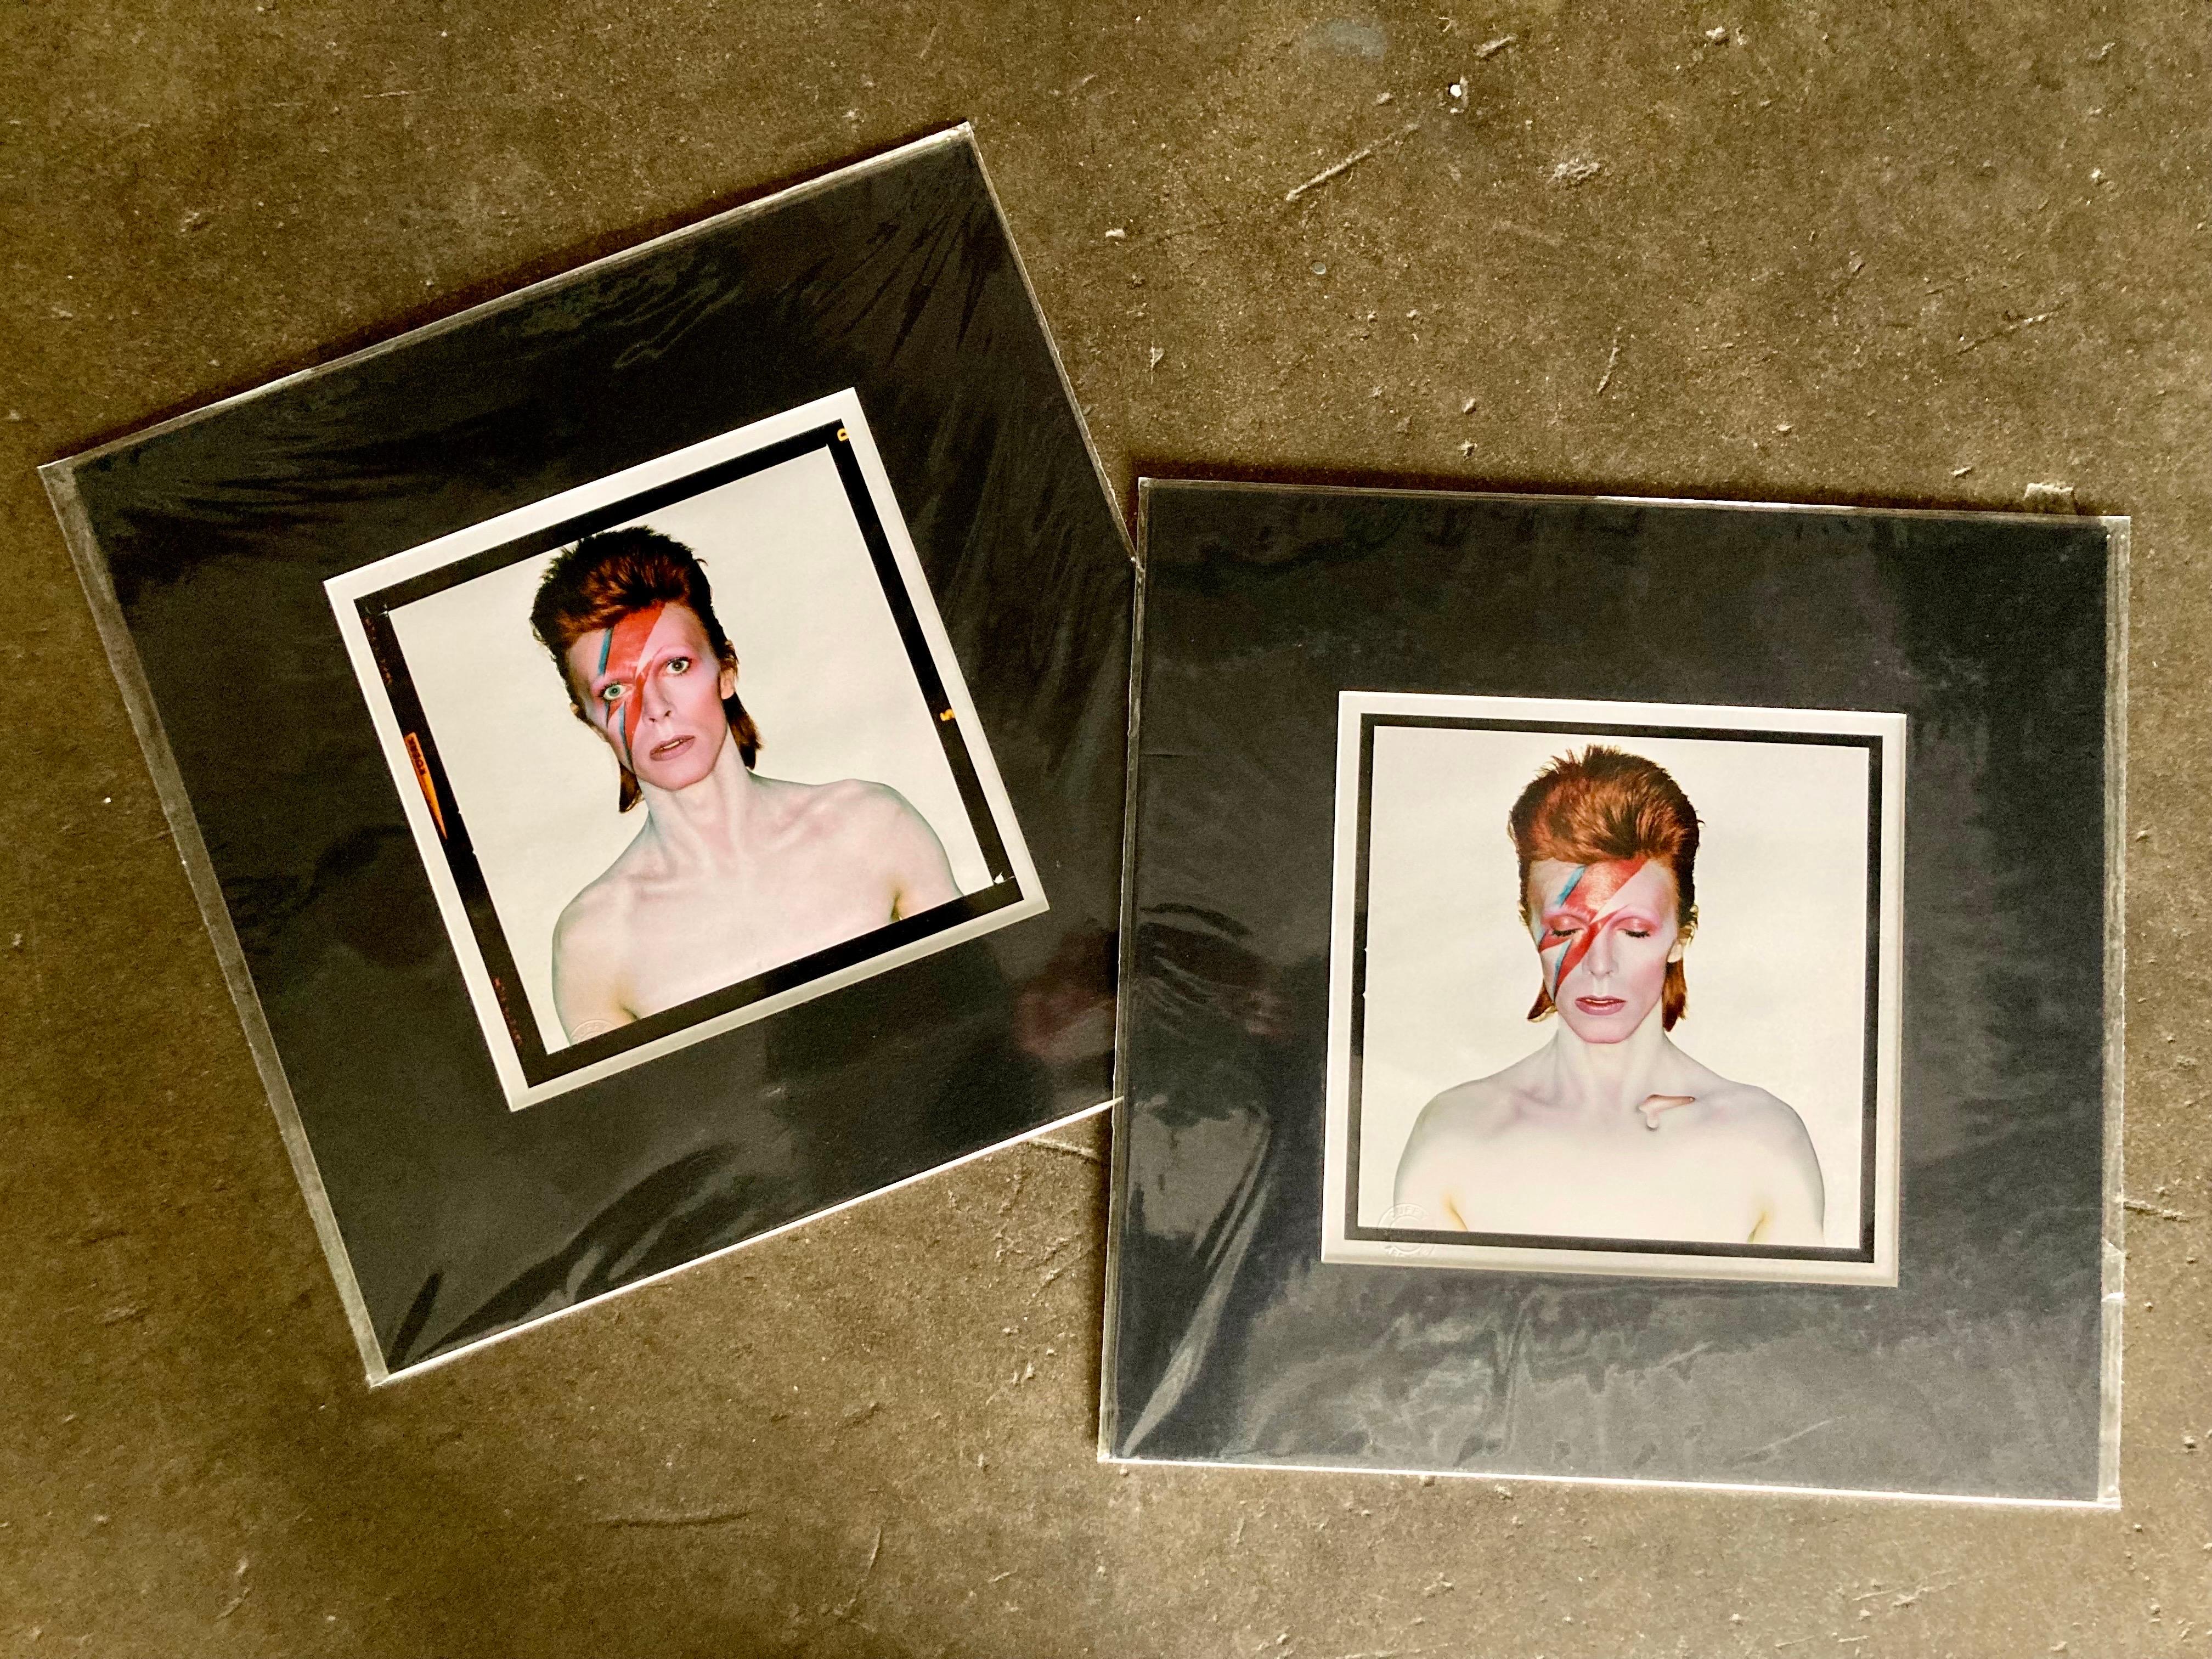 Satz von 2 Drucken, beide mit schwarzen Passepartouts vormattiert. David Bowie von Brian Duffy bei den Aufnahmen zum Albumcover von Aladdin Sane 1973. Ein Druck ist das Originalcover, der zweite ist die Version mit geöffneten Augen, die zum ersten